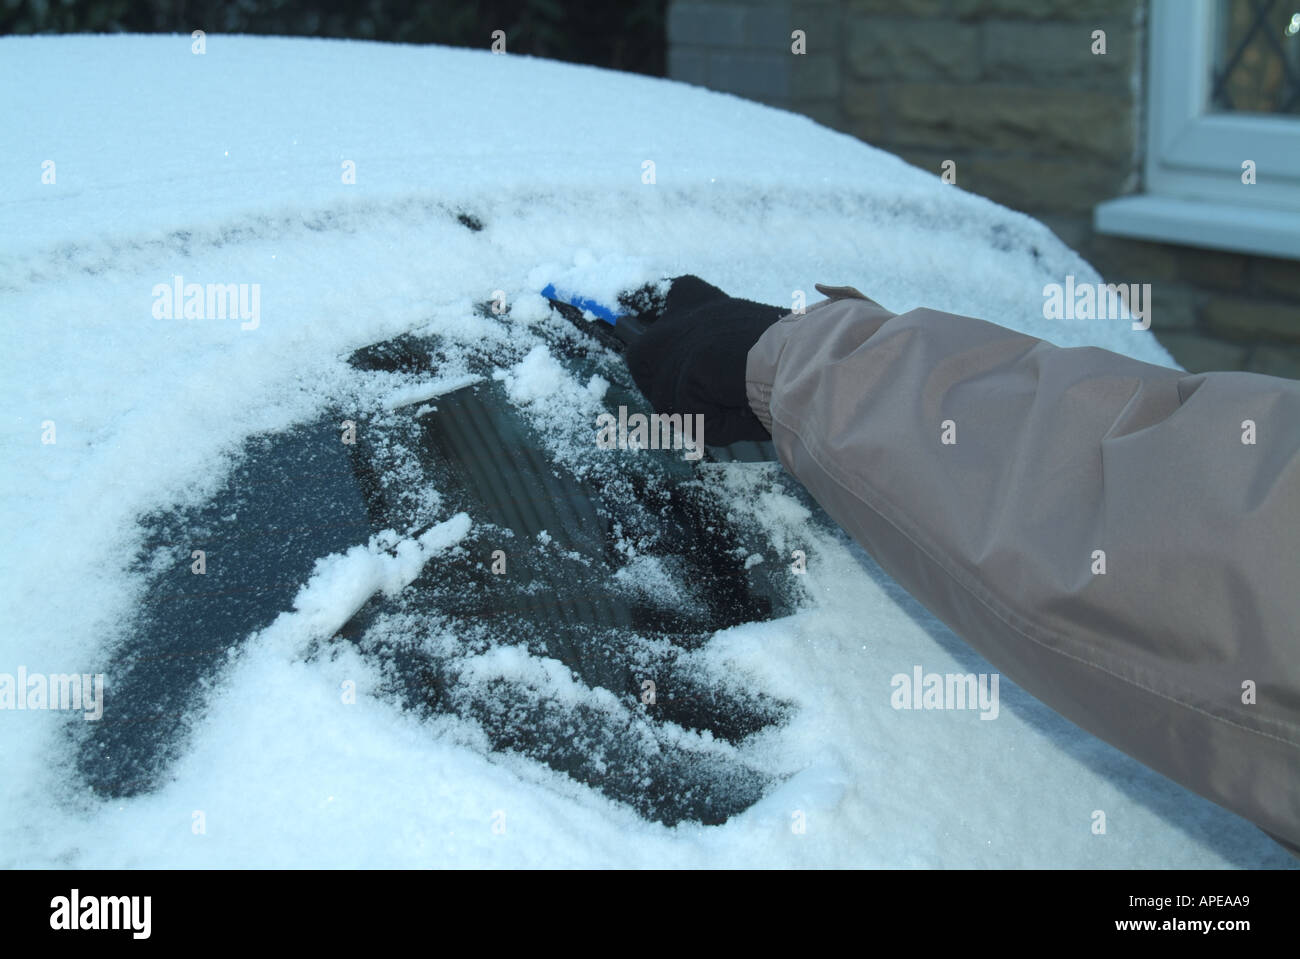 Ford Ka pare-brise couvert de givre Novembre dégeler Photo Stock - Alamy